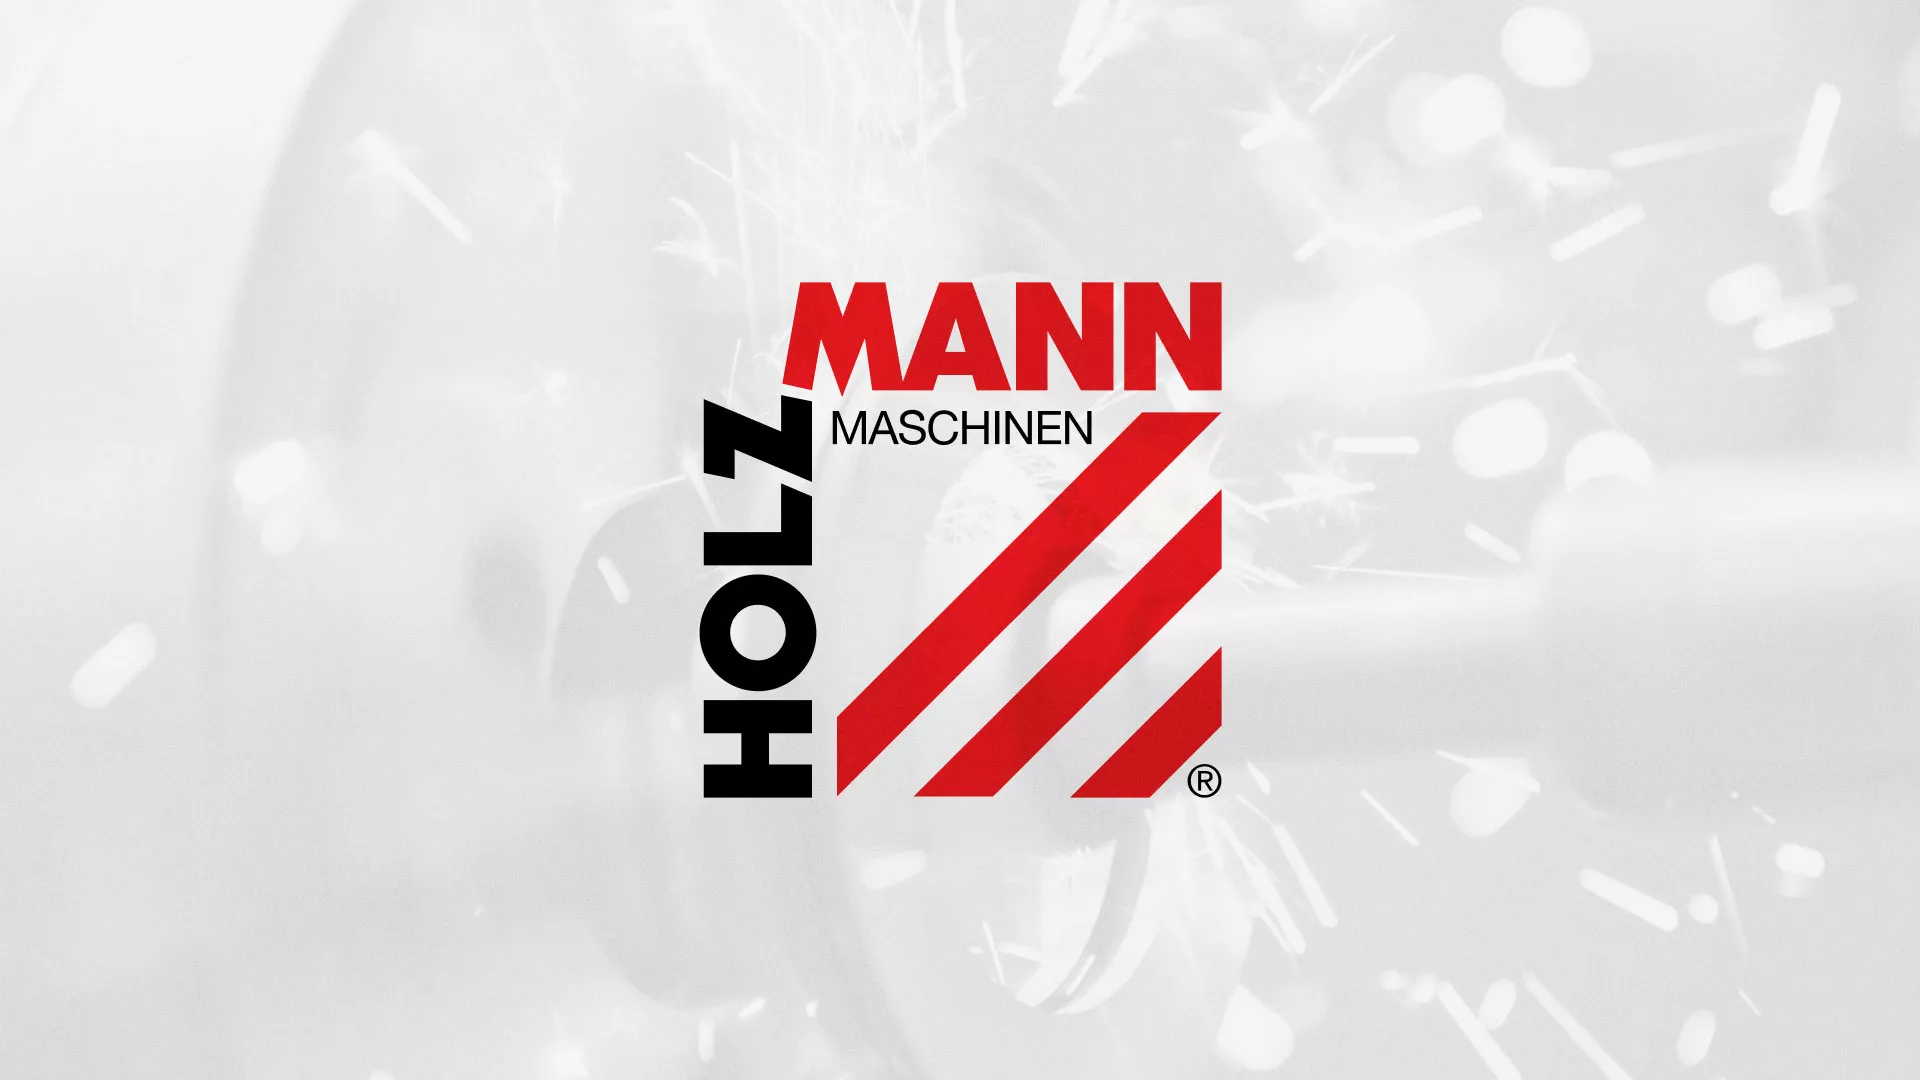 Создание сайта компании «HOLZMANN Maschinen GmbH» в Хабаровске